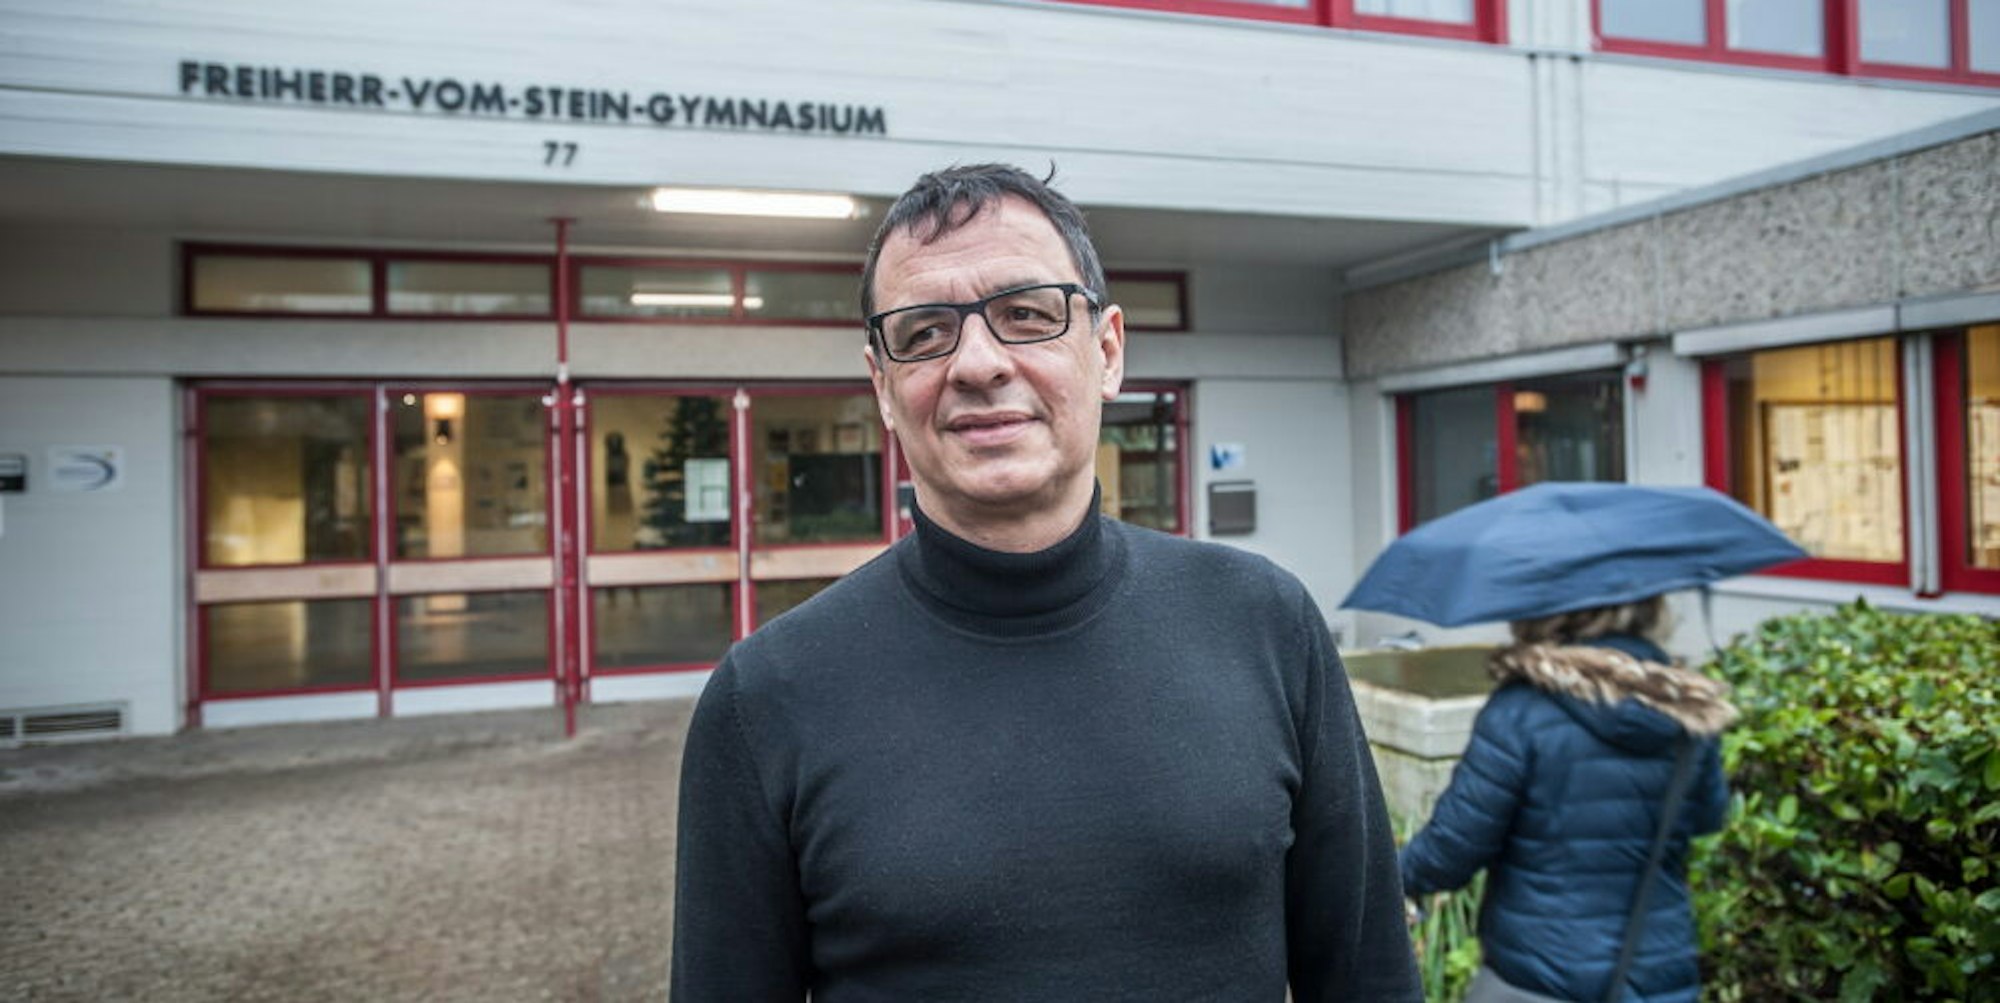 Andreas Röhrig ist seit Beginn des Jahres der neue Schulleiter am Schlebuscher Freiherr-vom-Stein-Gymnasium.